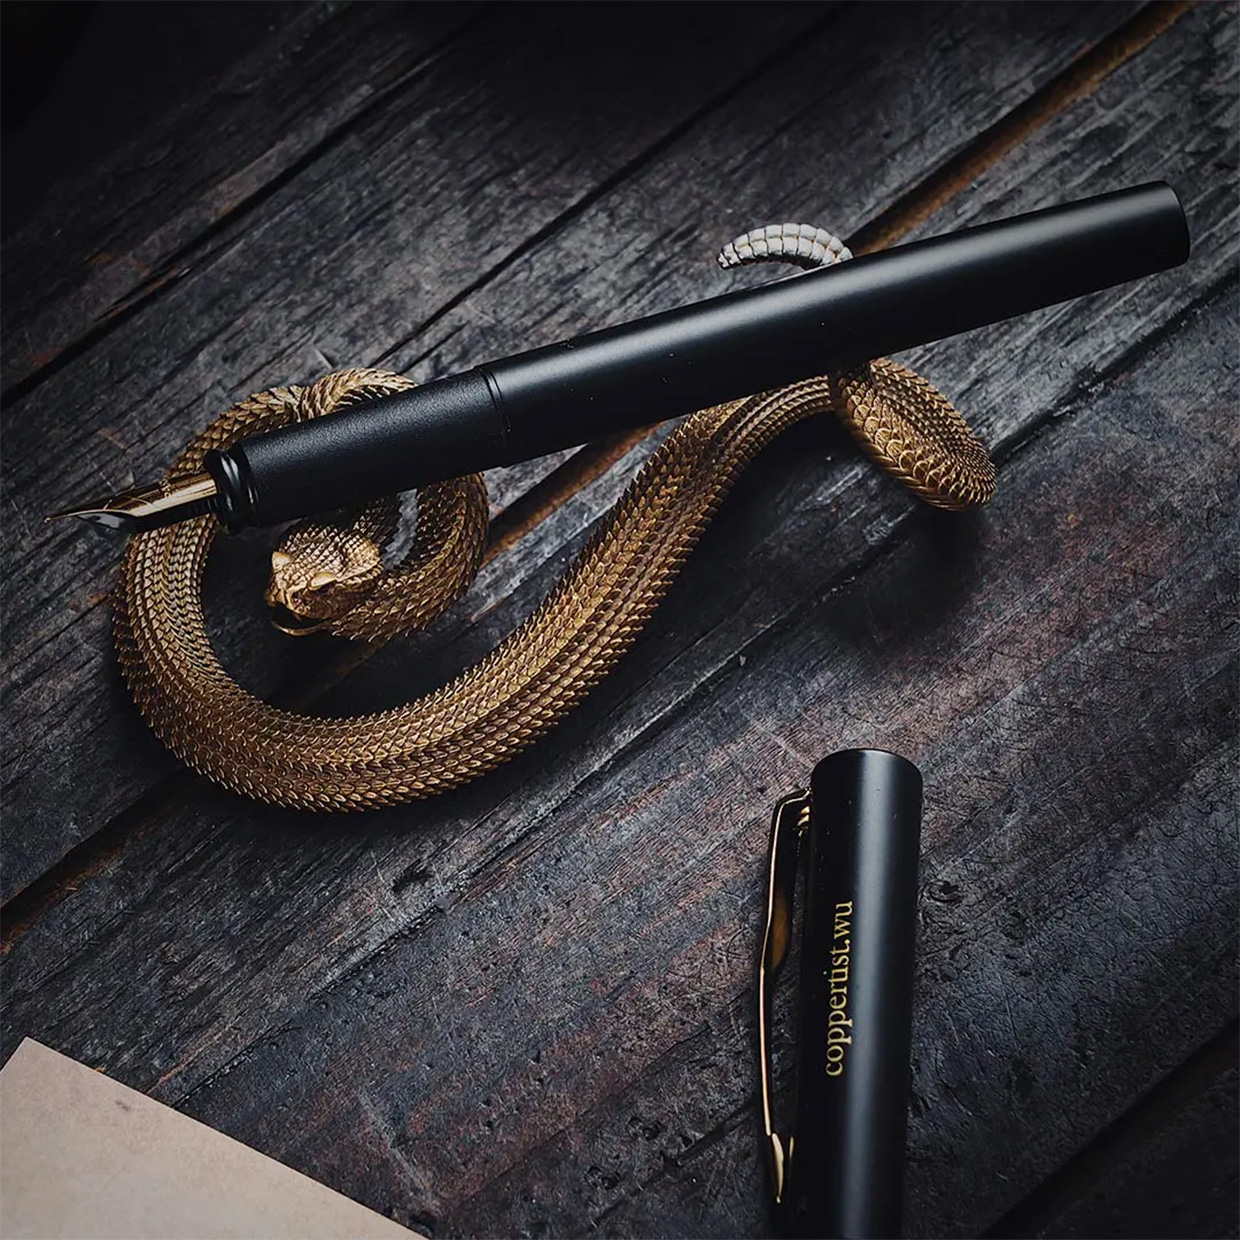 Brass Rattlesnake Pen Holder